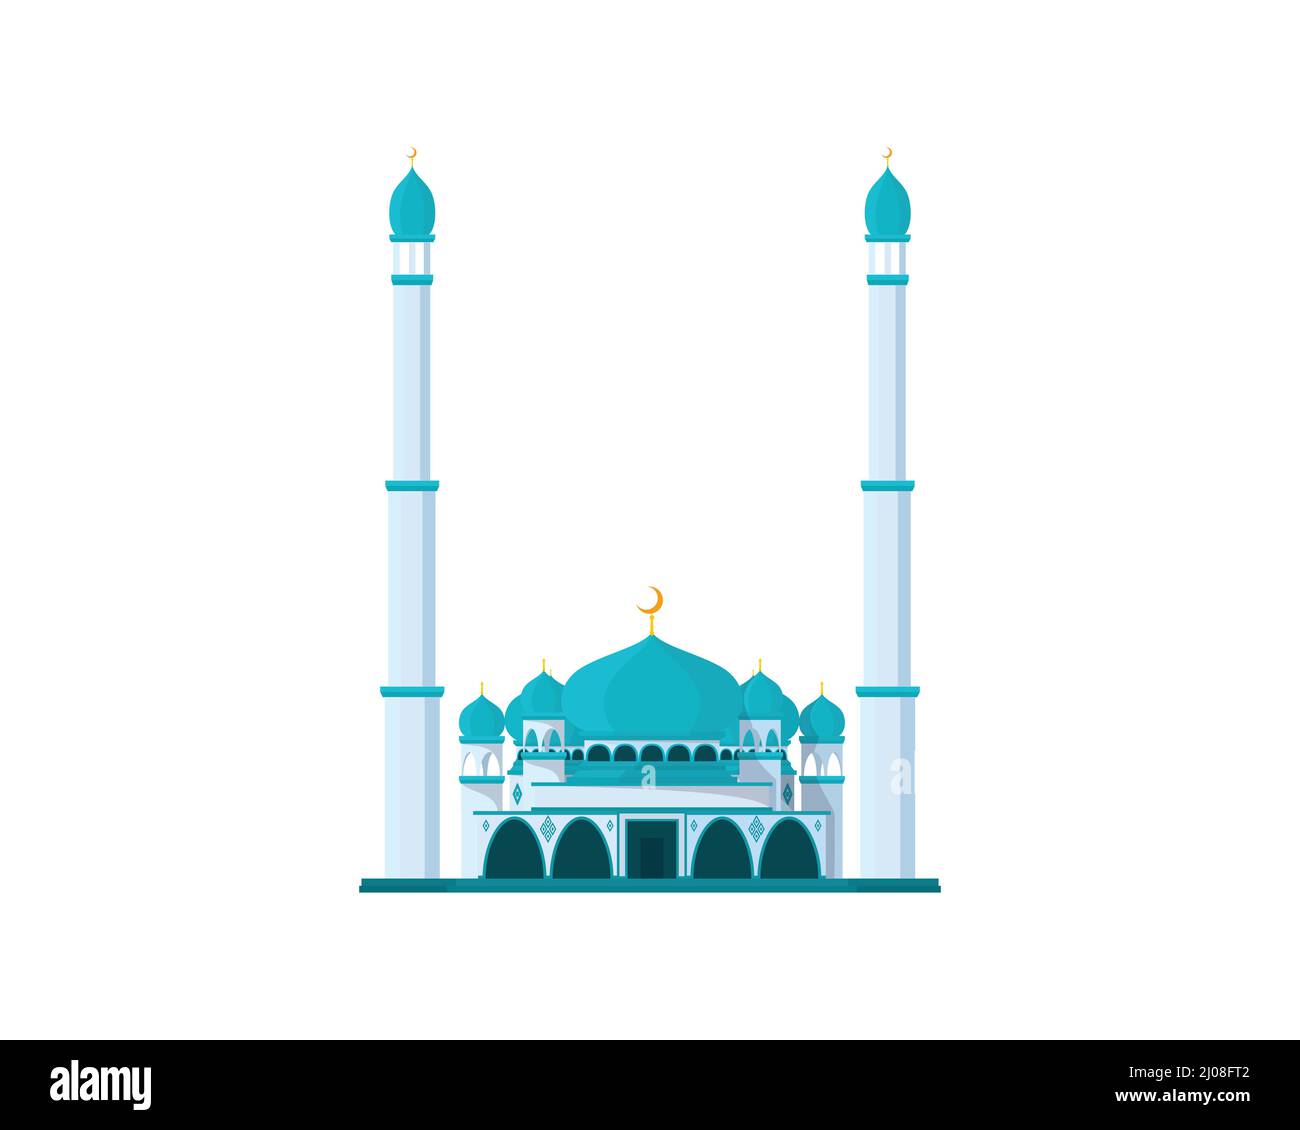 Detailreiche Moschee mit Hochturm Illustration Stock Vektor